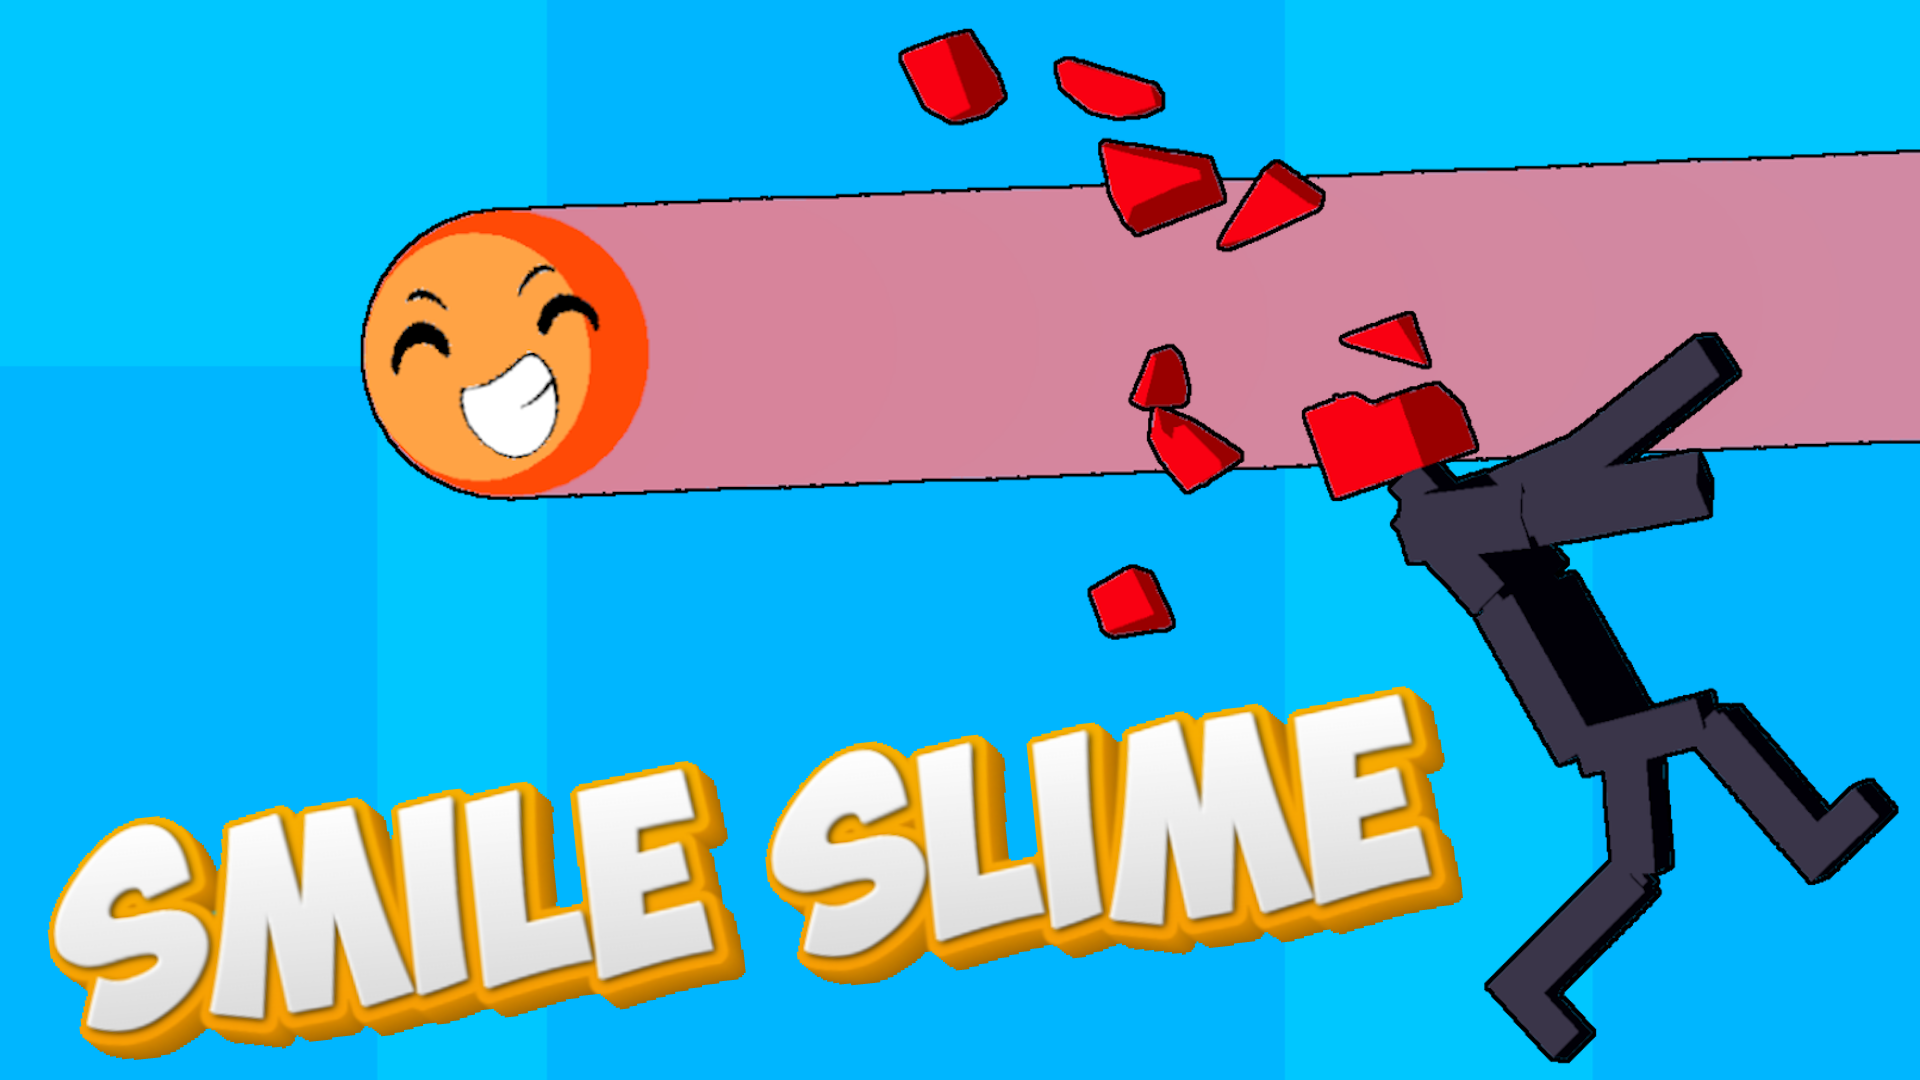 Smile Slime Game Image